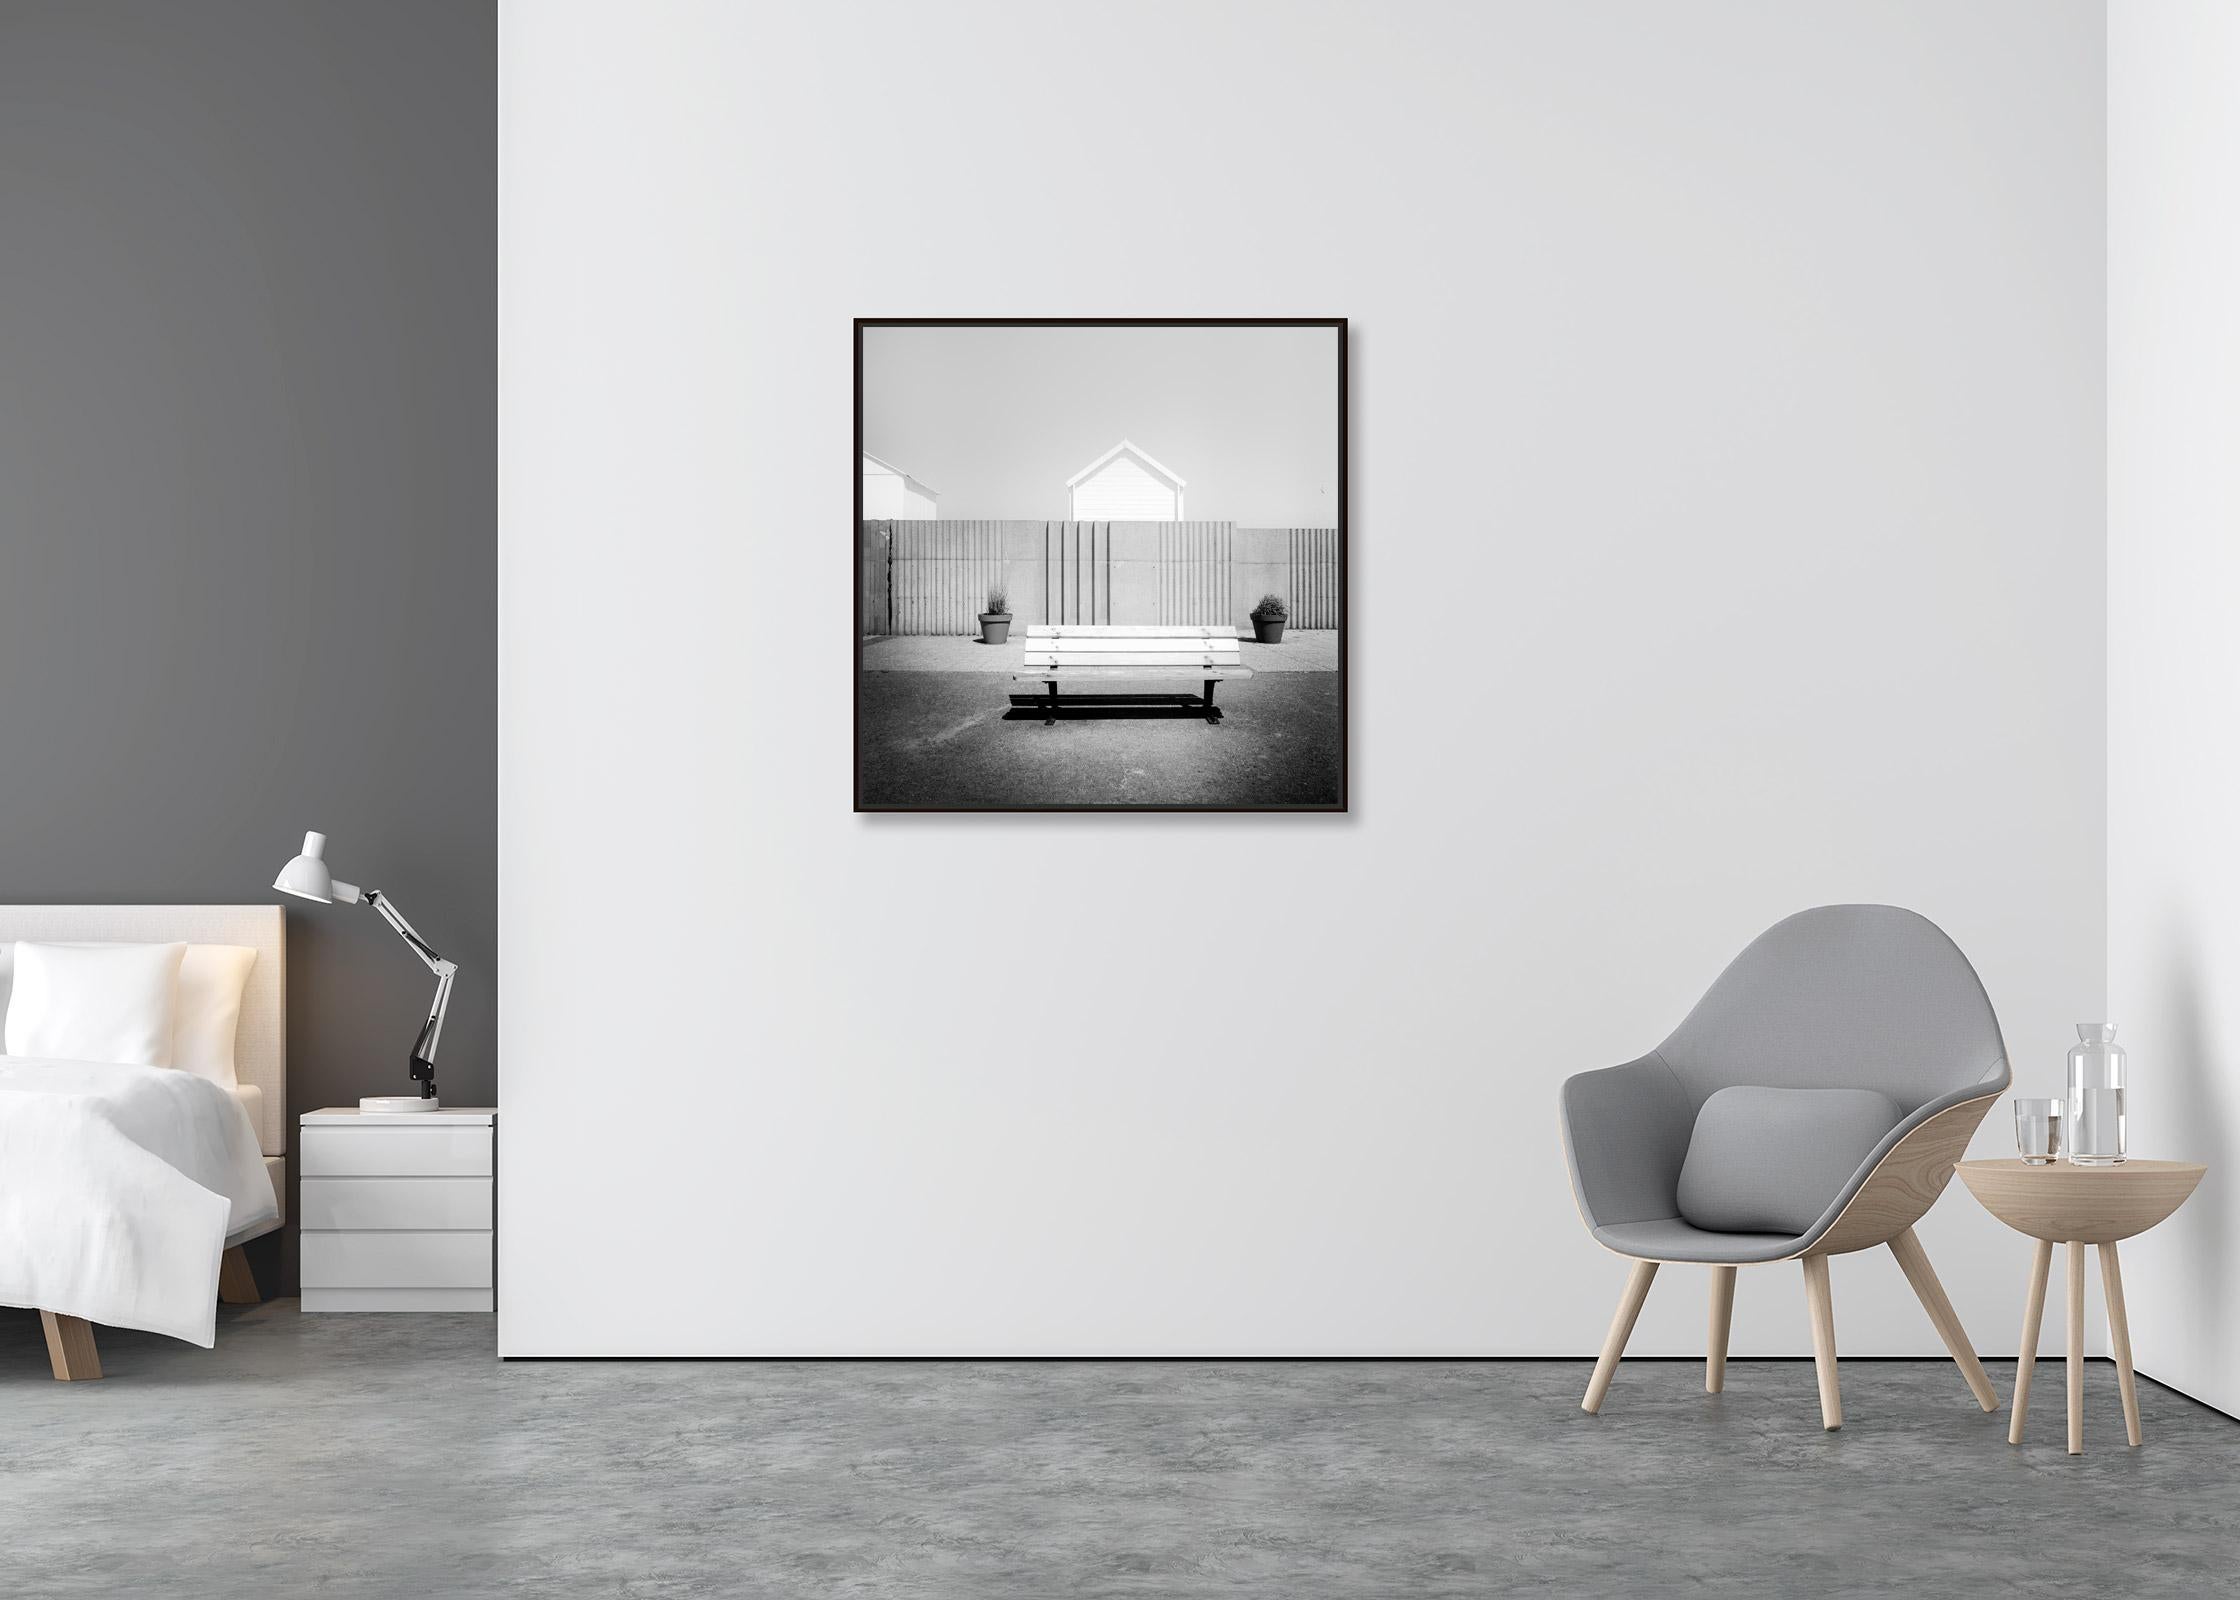 Esplanade, vie de plage, France, noir et blanc, art paysage, photographie - Contemporain Photograph par Gerald Berghammer